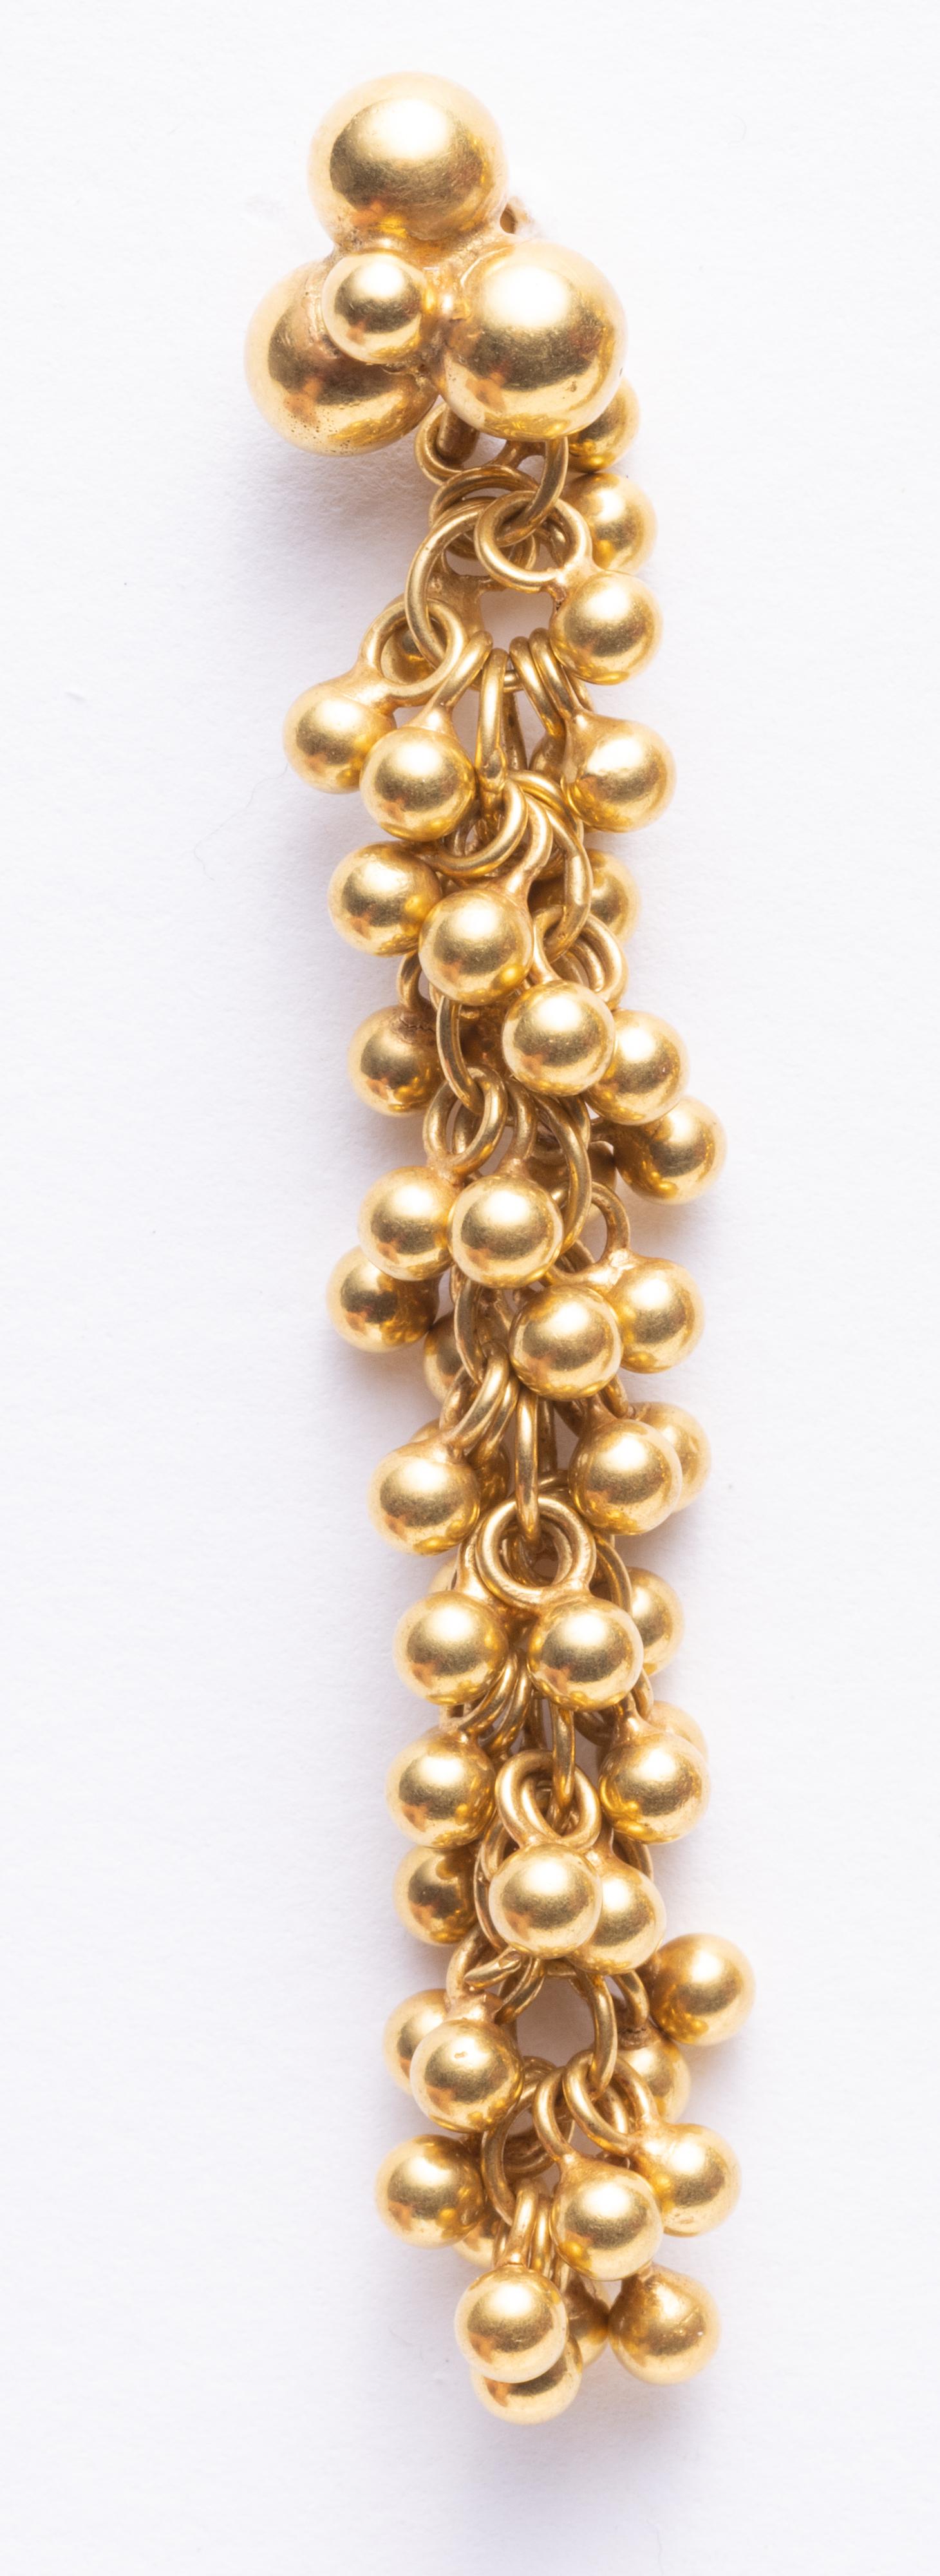 Ein Paar kunstvoll mit Perlen besetzte 18-karätige Goldkugeln, die auf eine lange Kette geflochten sind und so einen langen Ohrring mit Struktur und Bewegung schaffen.  Größere Goldkugeln bilden den Pfosten am Ohrläppchen, für gepiercte Ohren.